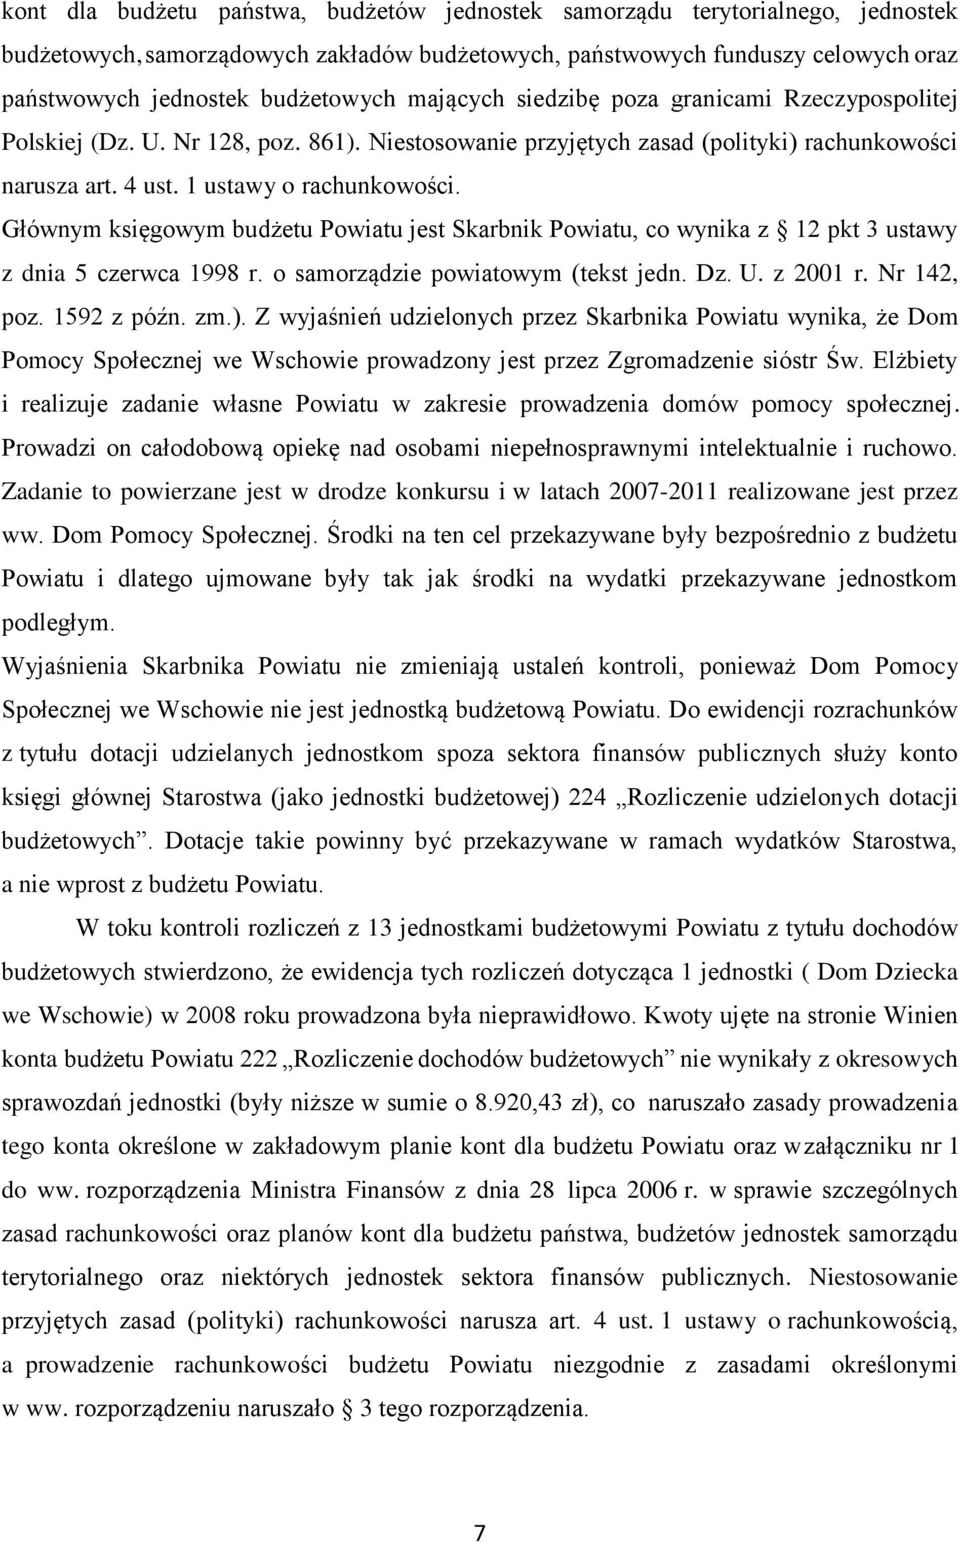 Głównym księgowym budżetu Powiatu jest Skarbnik Powiatu, co wynika z 12 pkt 3 ustawy z dnia 5 czerwca 1998 r. o samorządzie powiatowym (tekst jedn. Dz. U. z 2001 r. Nr 142, poz. 1592 z późn. zm.).